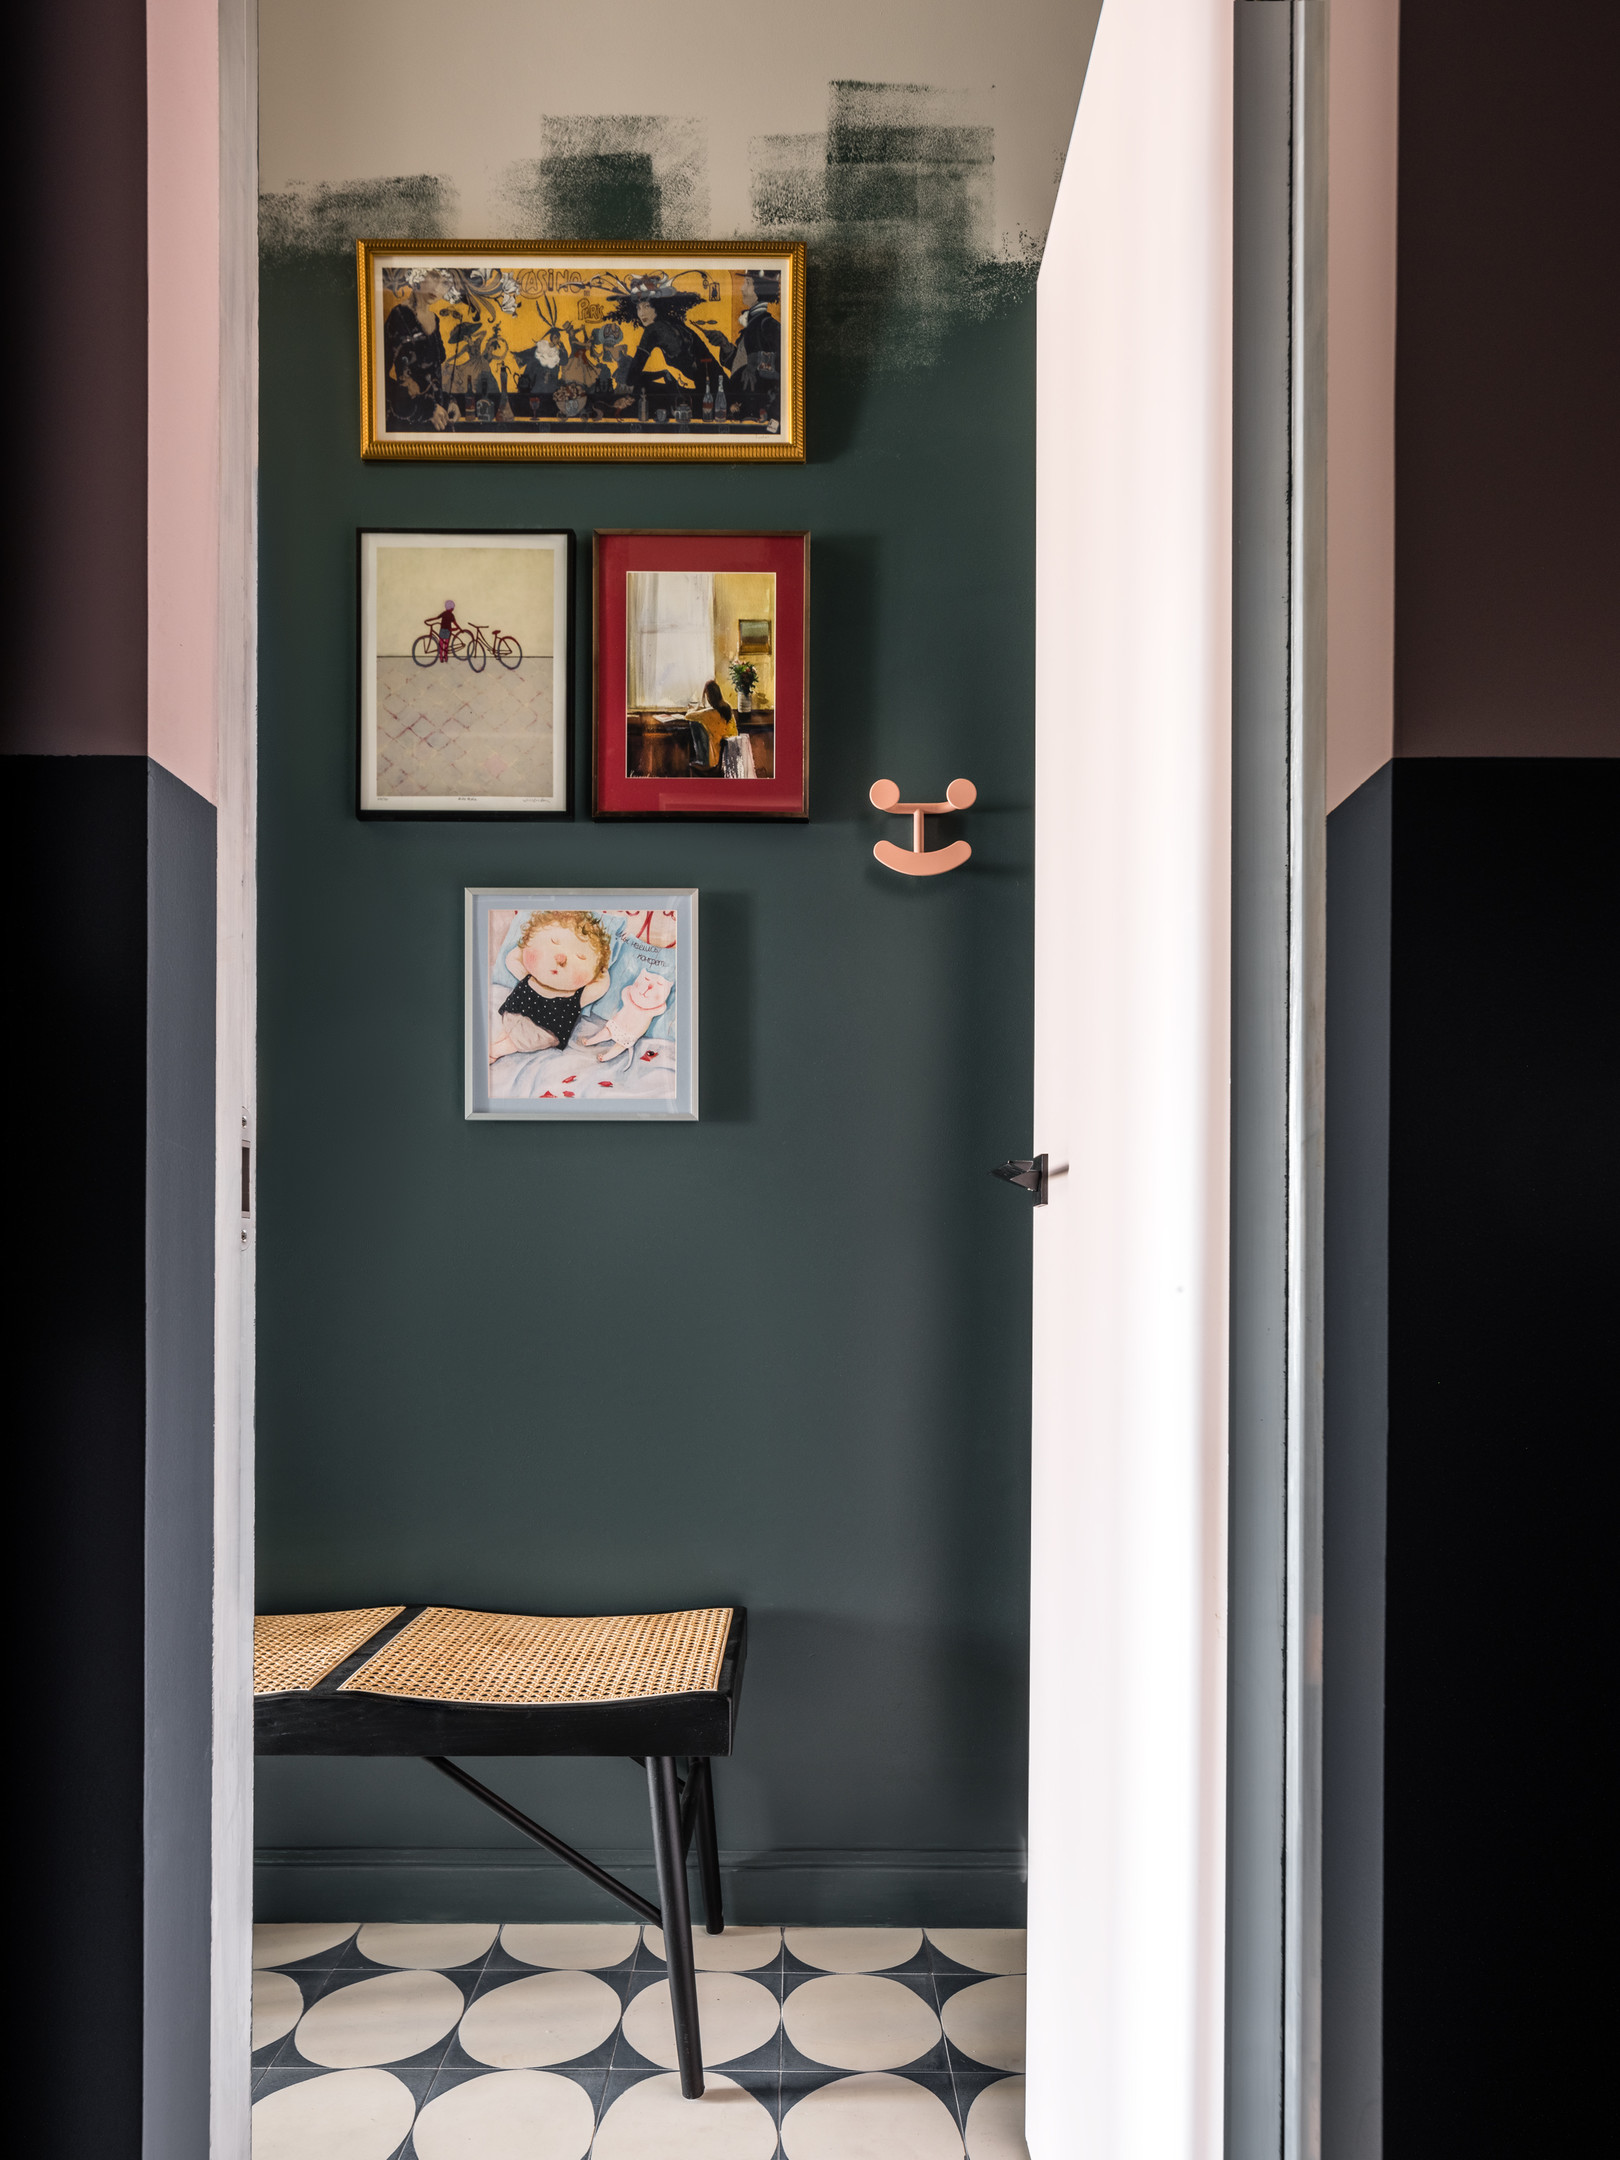 Thiết kế móc treo tường của thương hiệu Jaime Hayon. Những bức tranh sắc màu tươi tắn, chủ đề dễ thương cho bức tường xám không còn buồn tẻ.